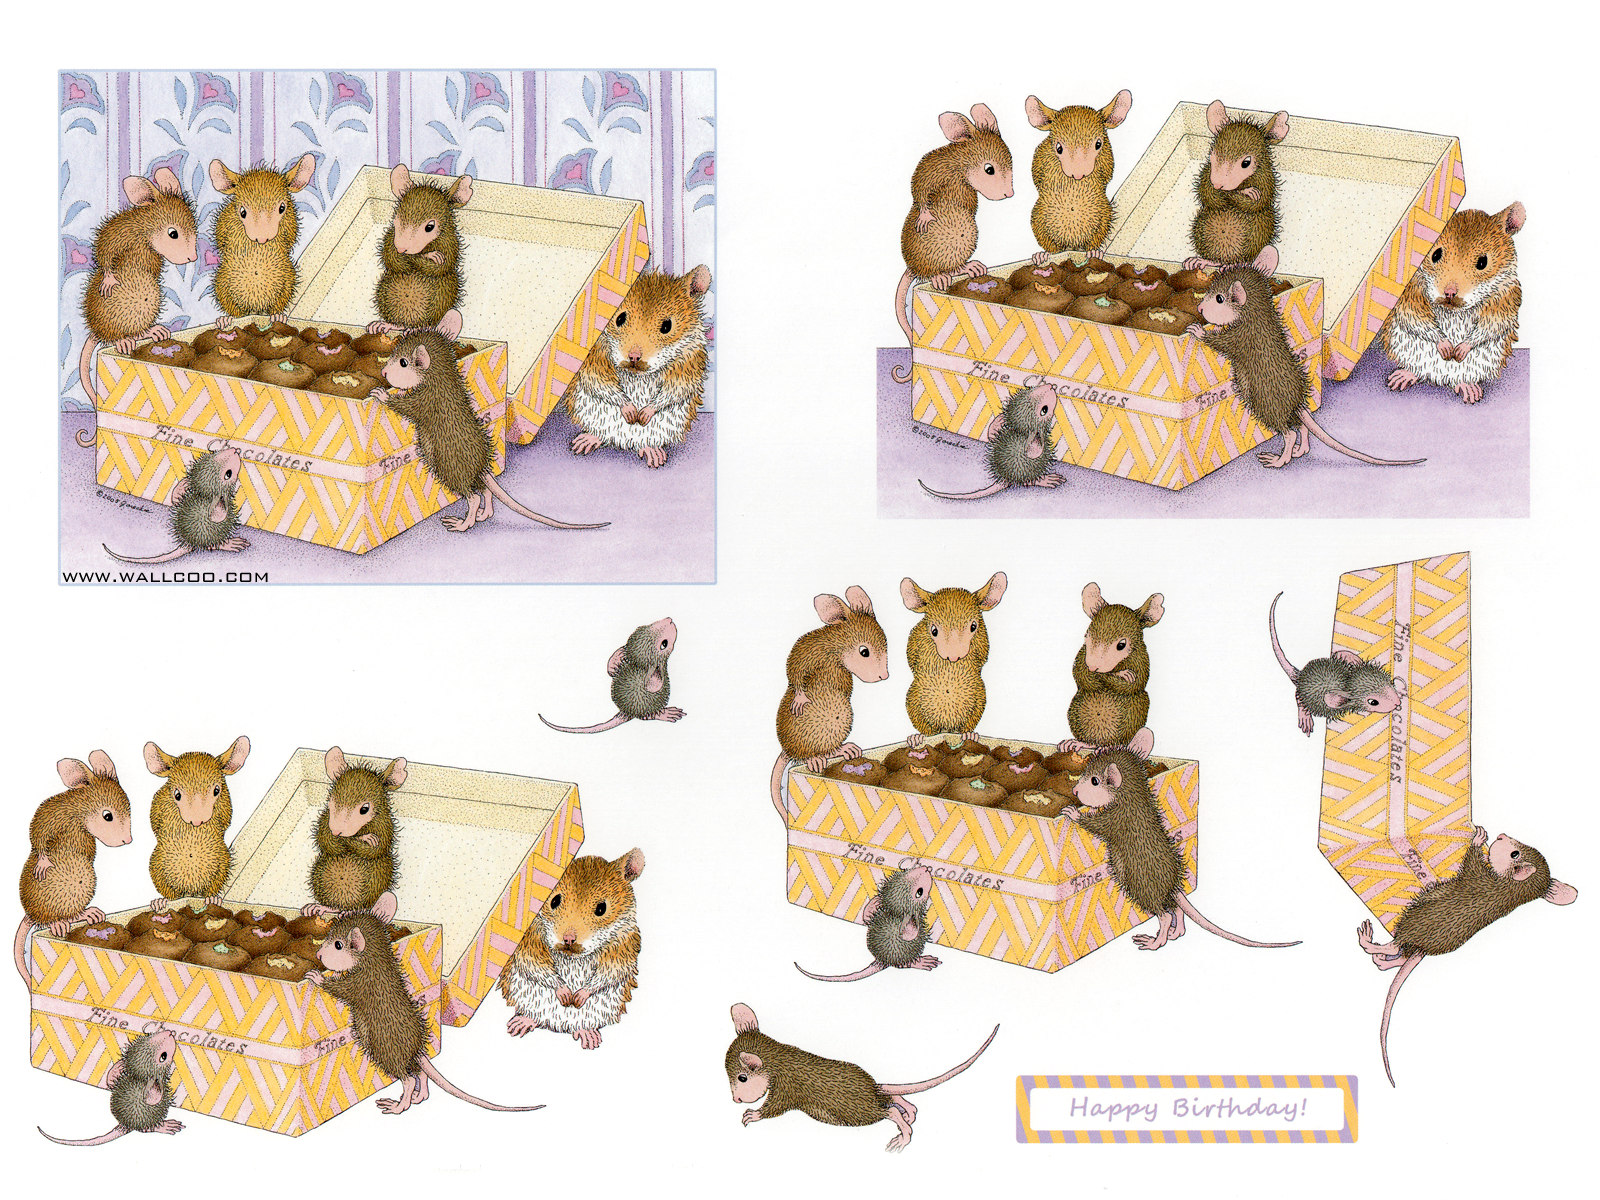 壁纸1600x1200 巧克力 可爱小老鼠插画原画壁纸 鼠鼠一家-温馨小老鼠插画壁纸壁纸 鼠鼠一家-温馨小老鼠插画壁纸图片 鼠鼠一家-温馨小老鼠插画壁纸素材 绘画壁纸 绘画图库 绘画图片素材桌面壁纸